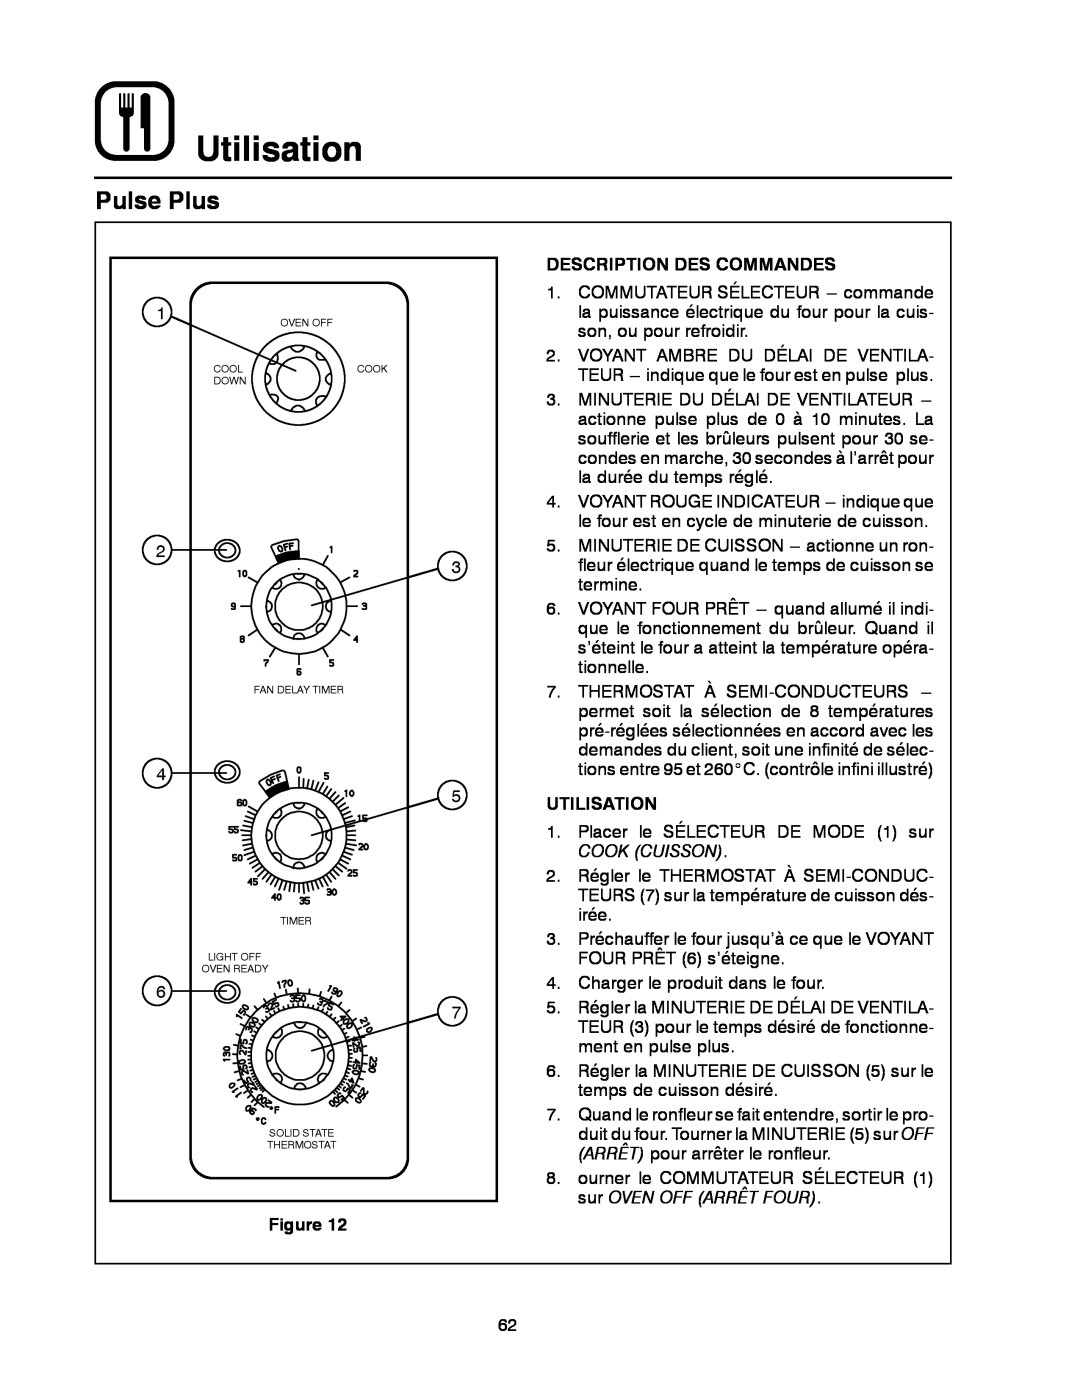 Blodgett DFG-50 manual Utilisation, Pulse Plus, Description Des Commandes, Minuterie Du Délai De Ventilateur 